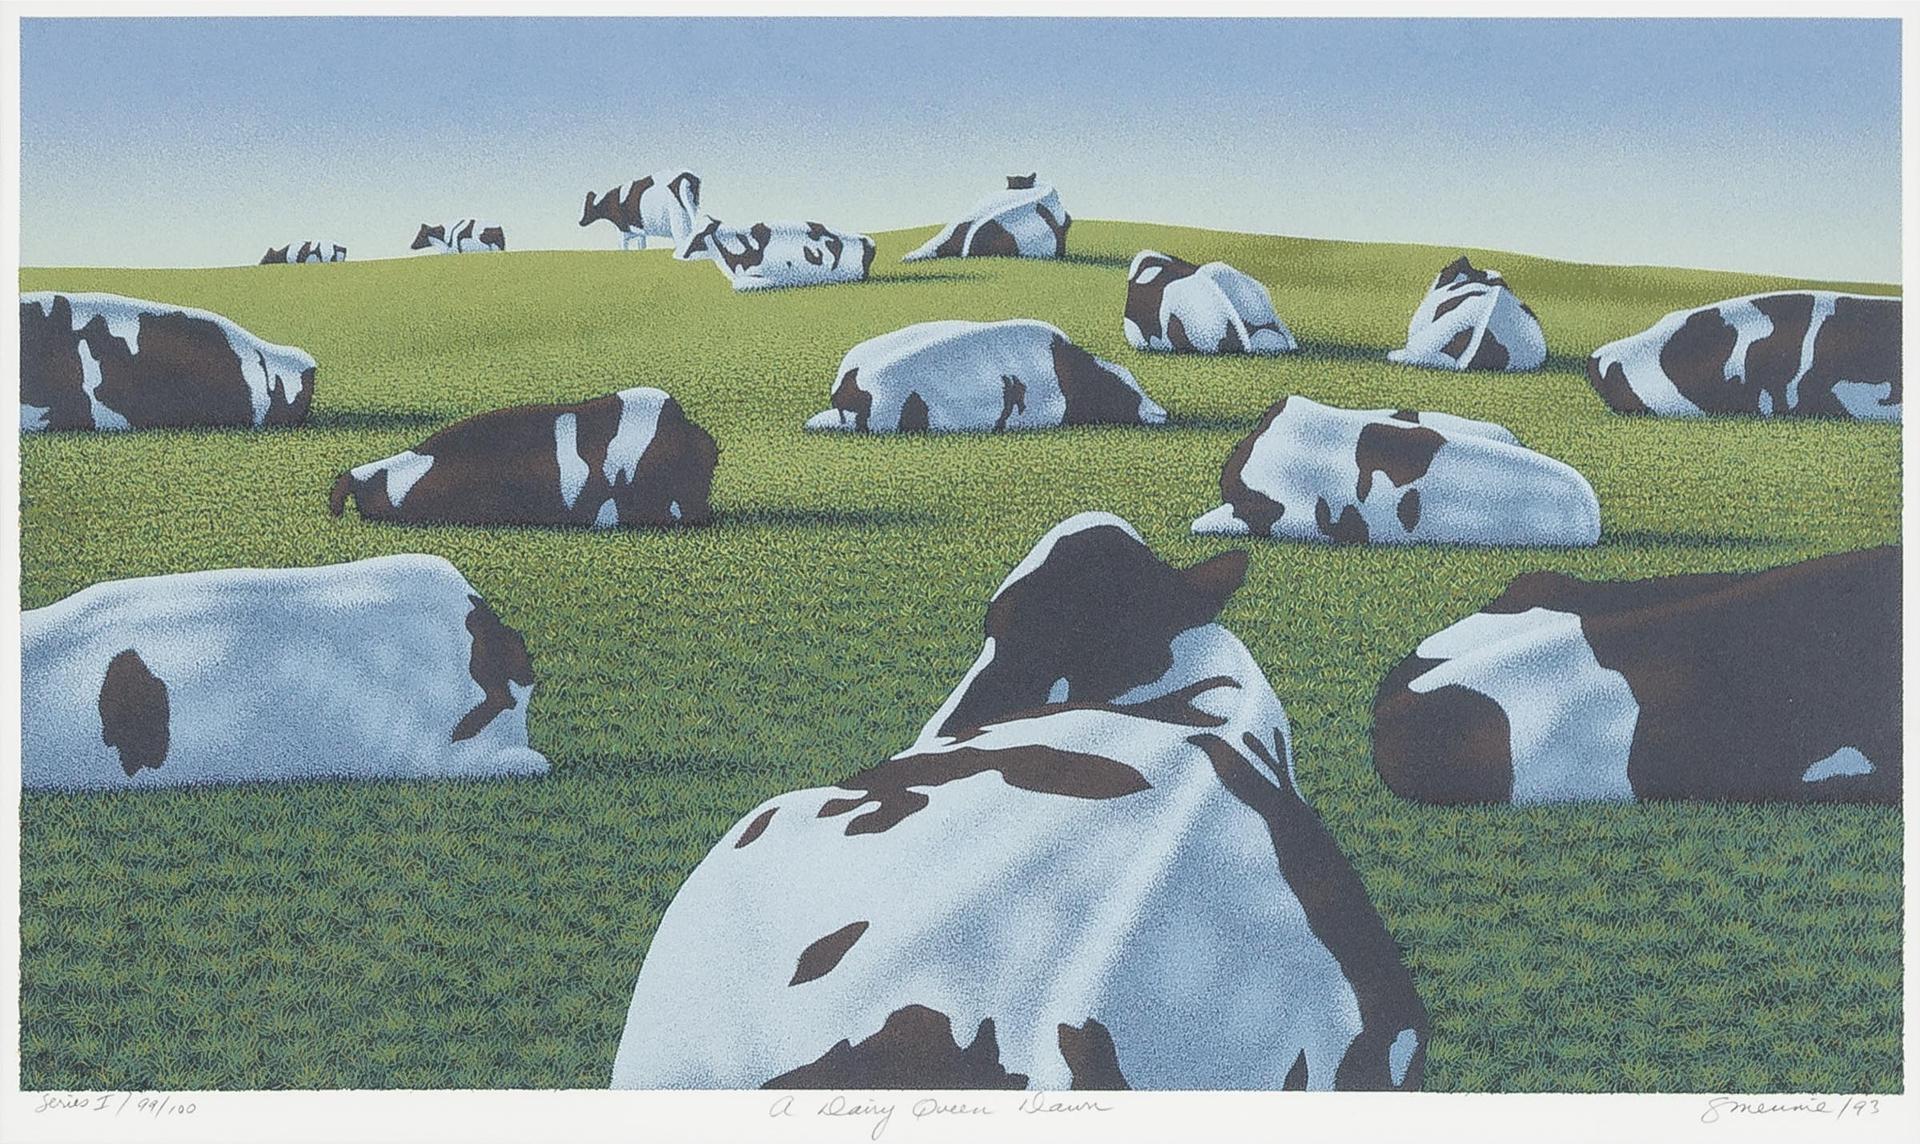 Steve Mennie (1945) - A Dairy Queen Farm